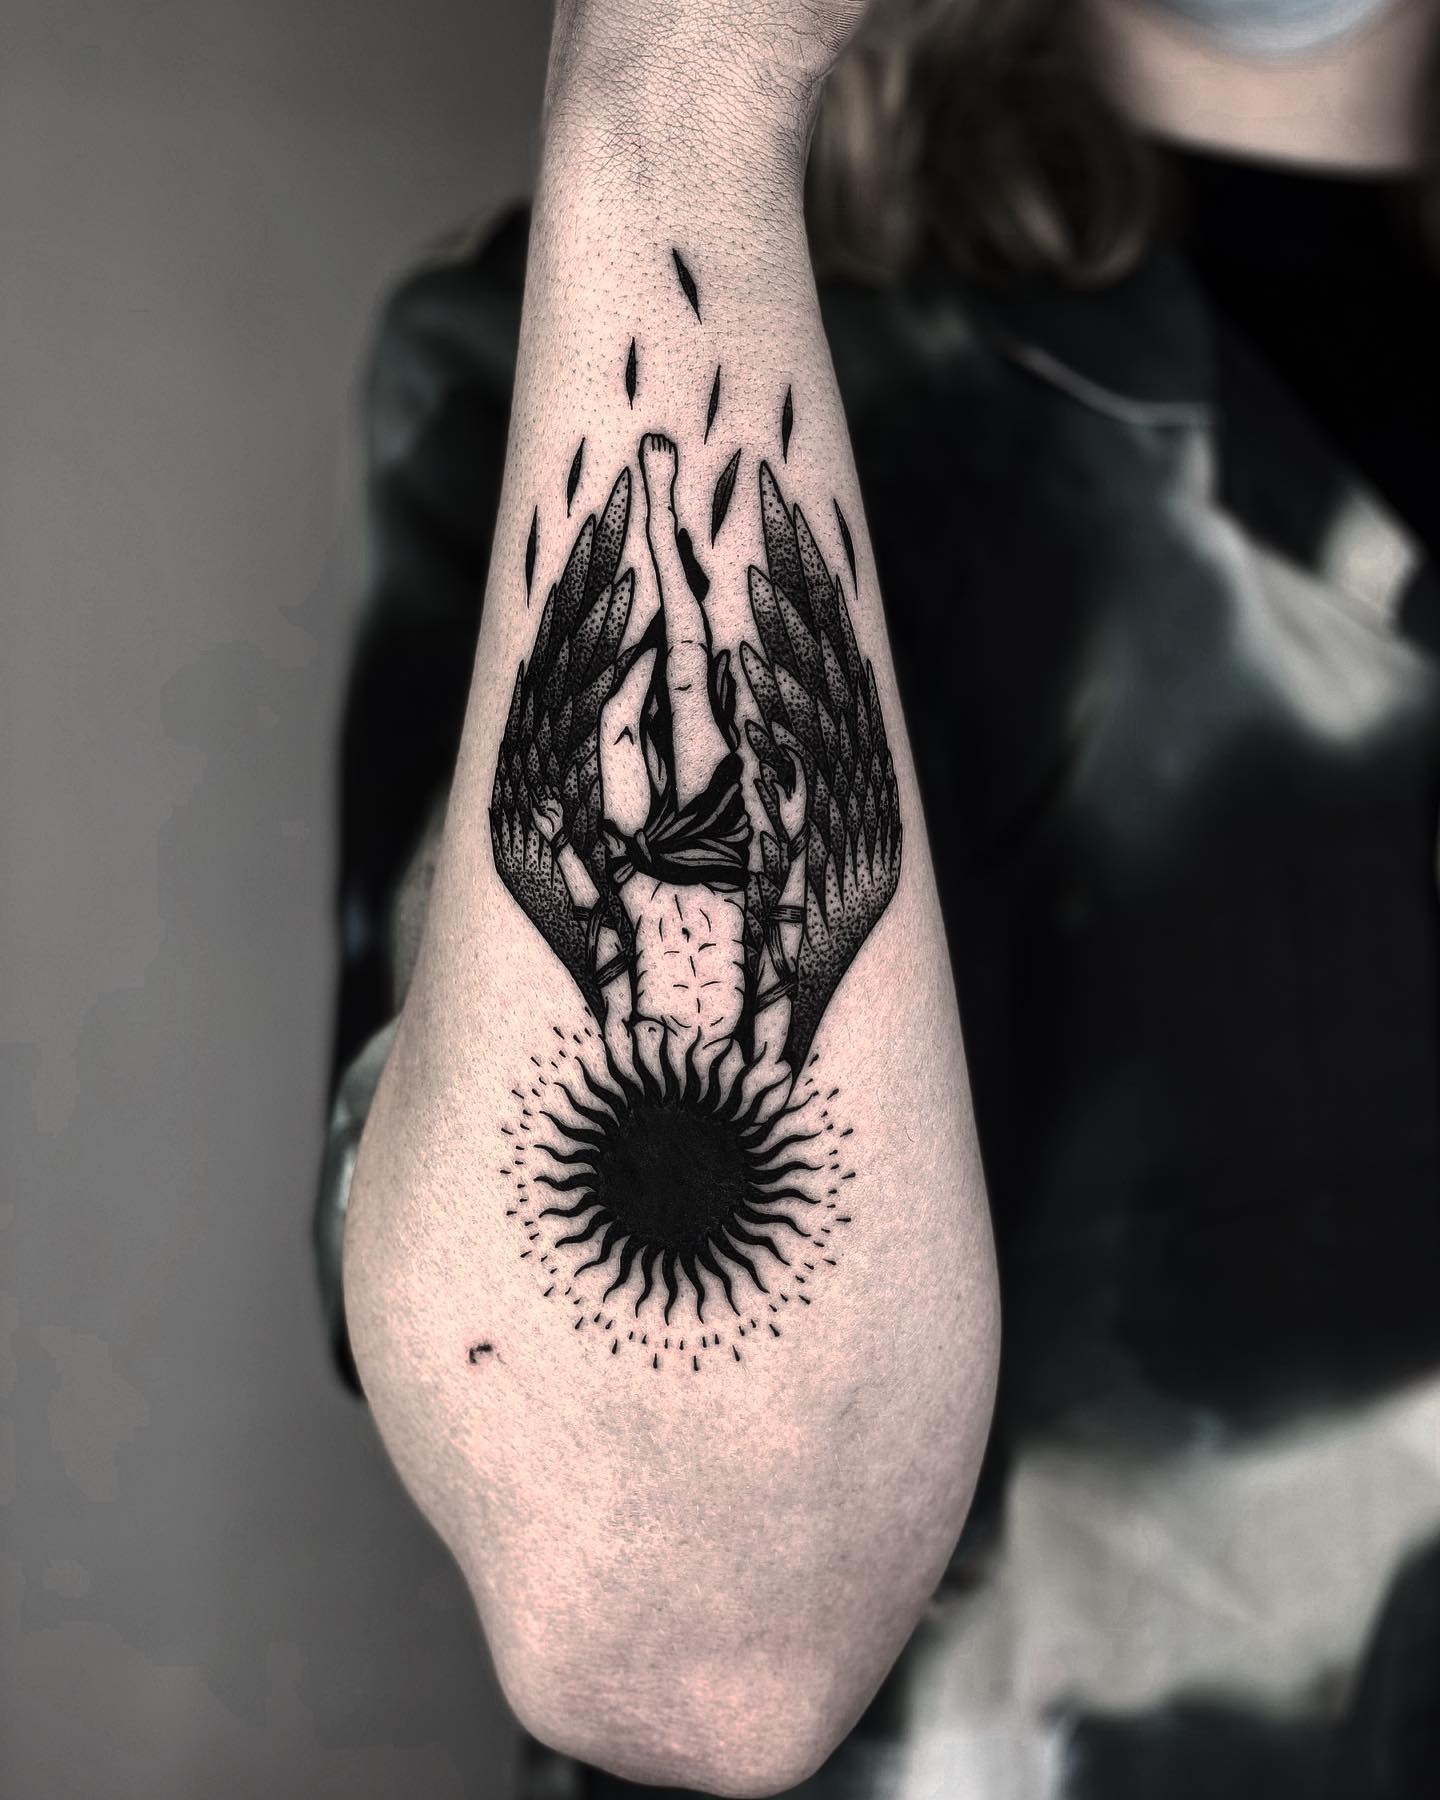 Diseño de tatuaje de brazo Icarus